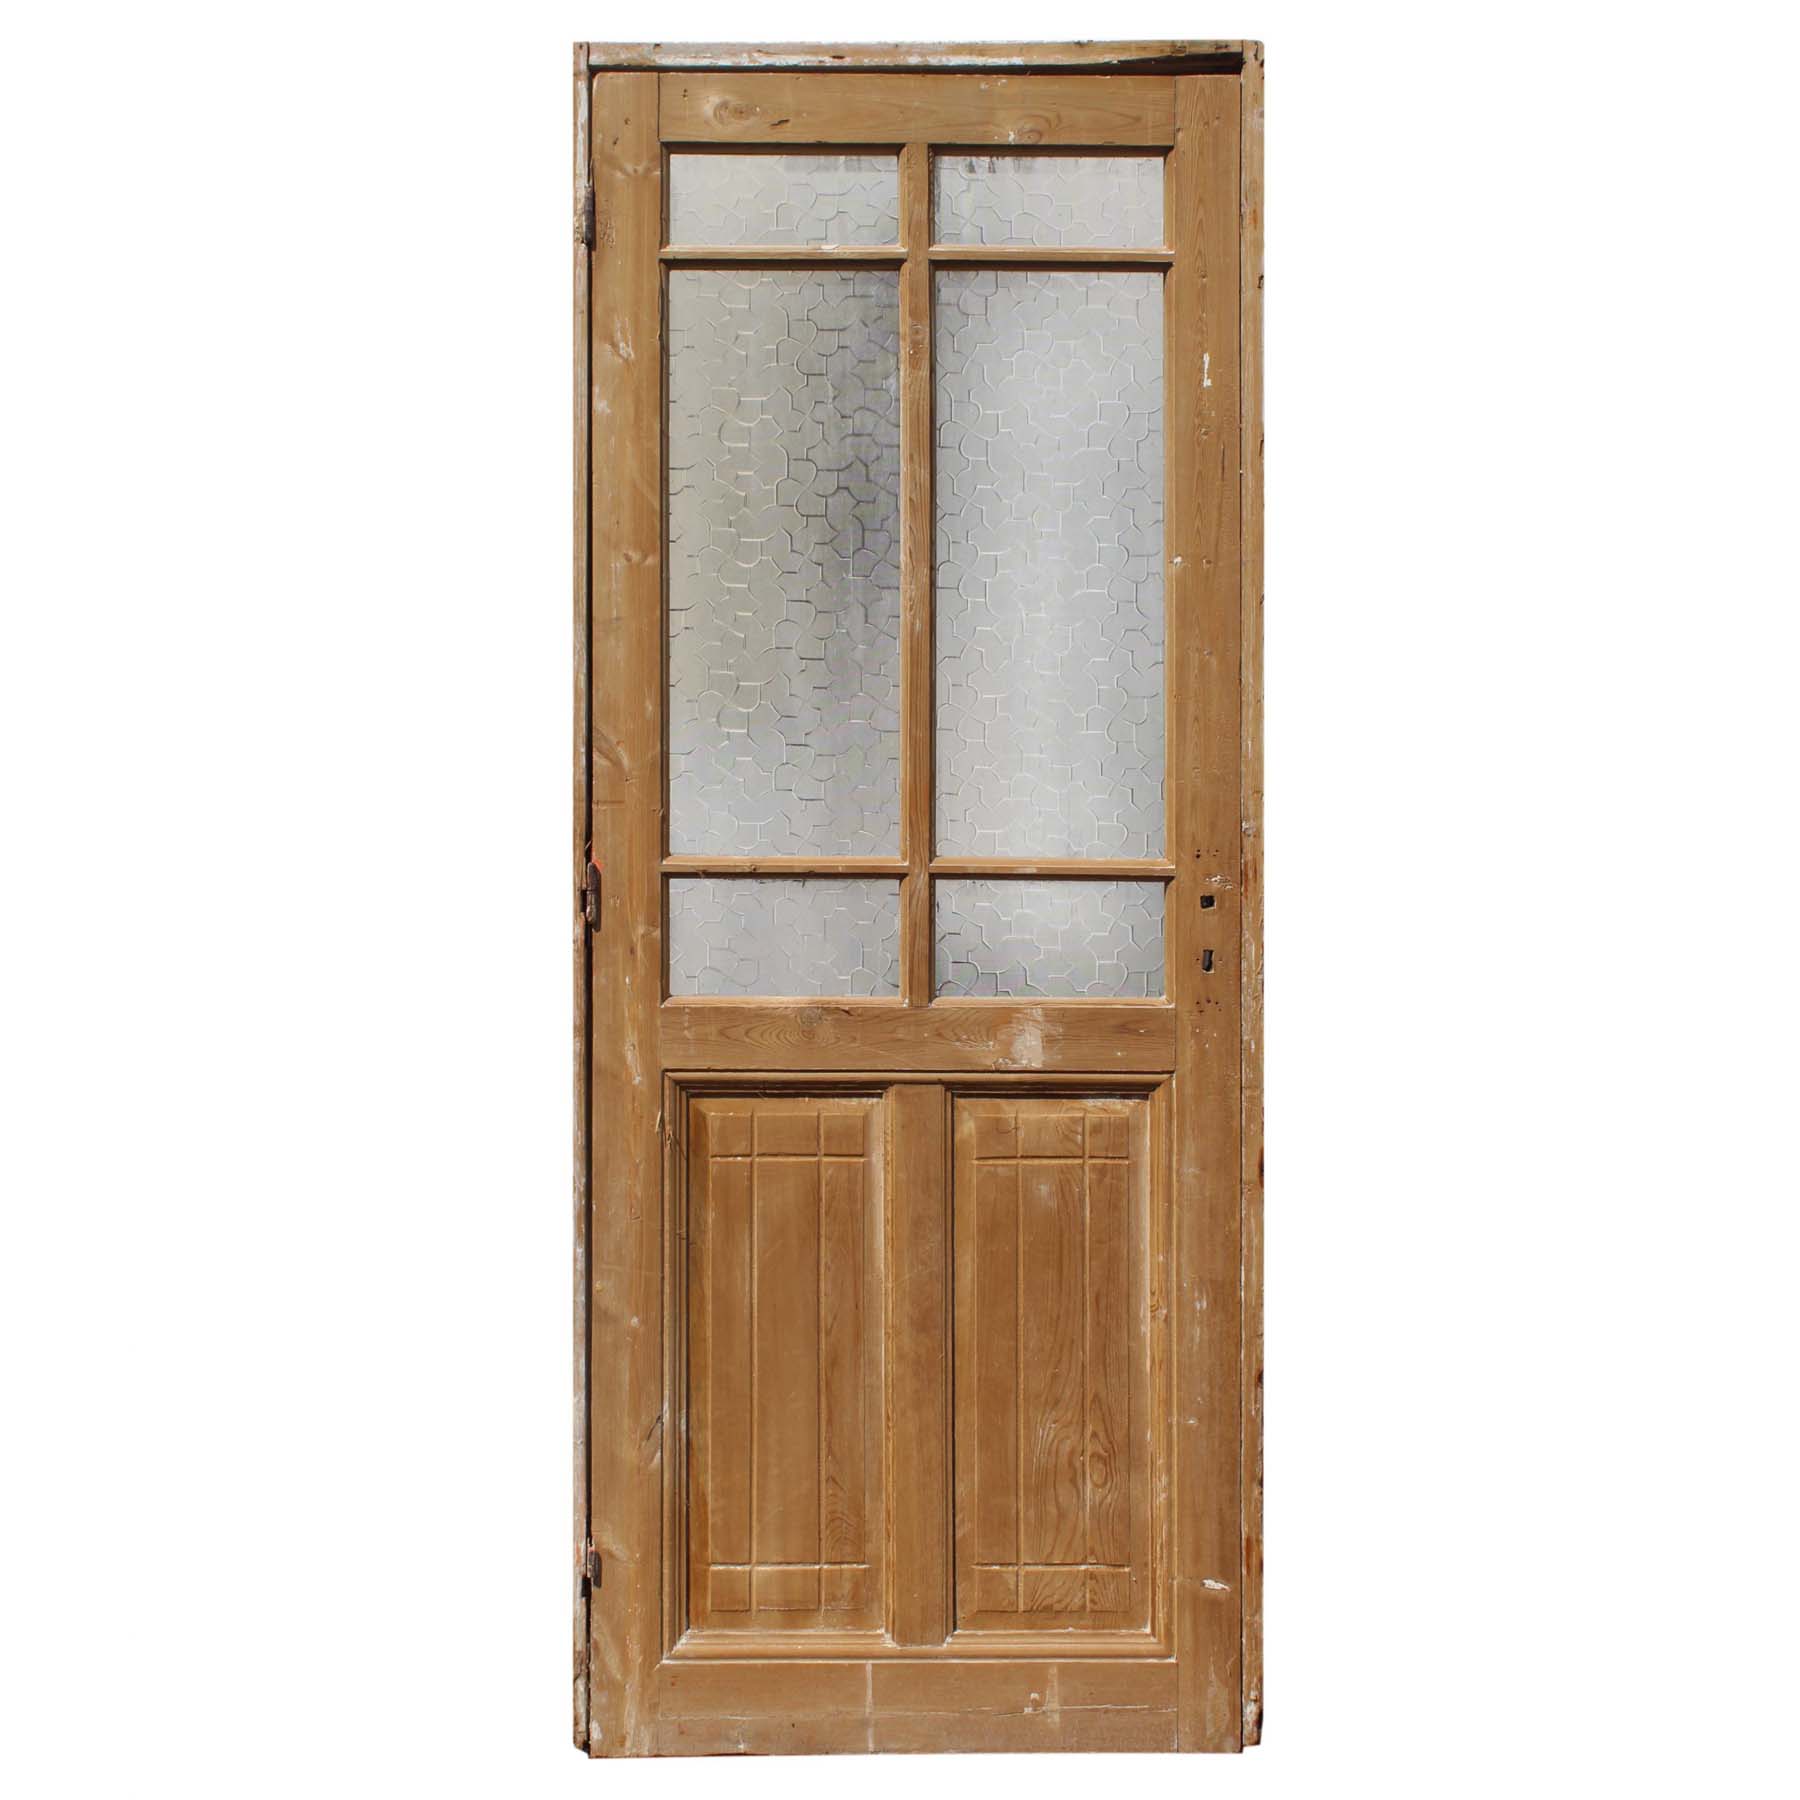 SOLD Salvaged 32" Antique Door, c. 1910-0